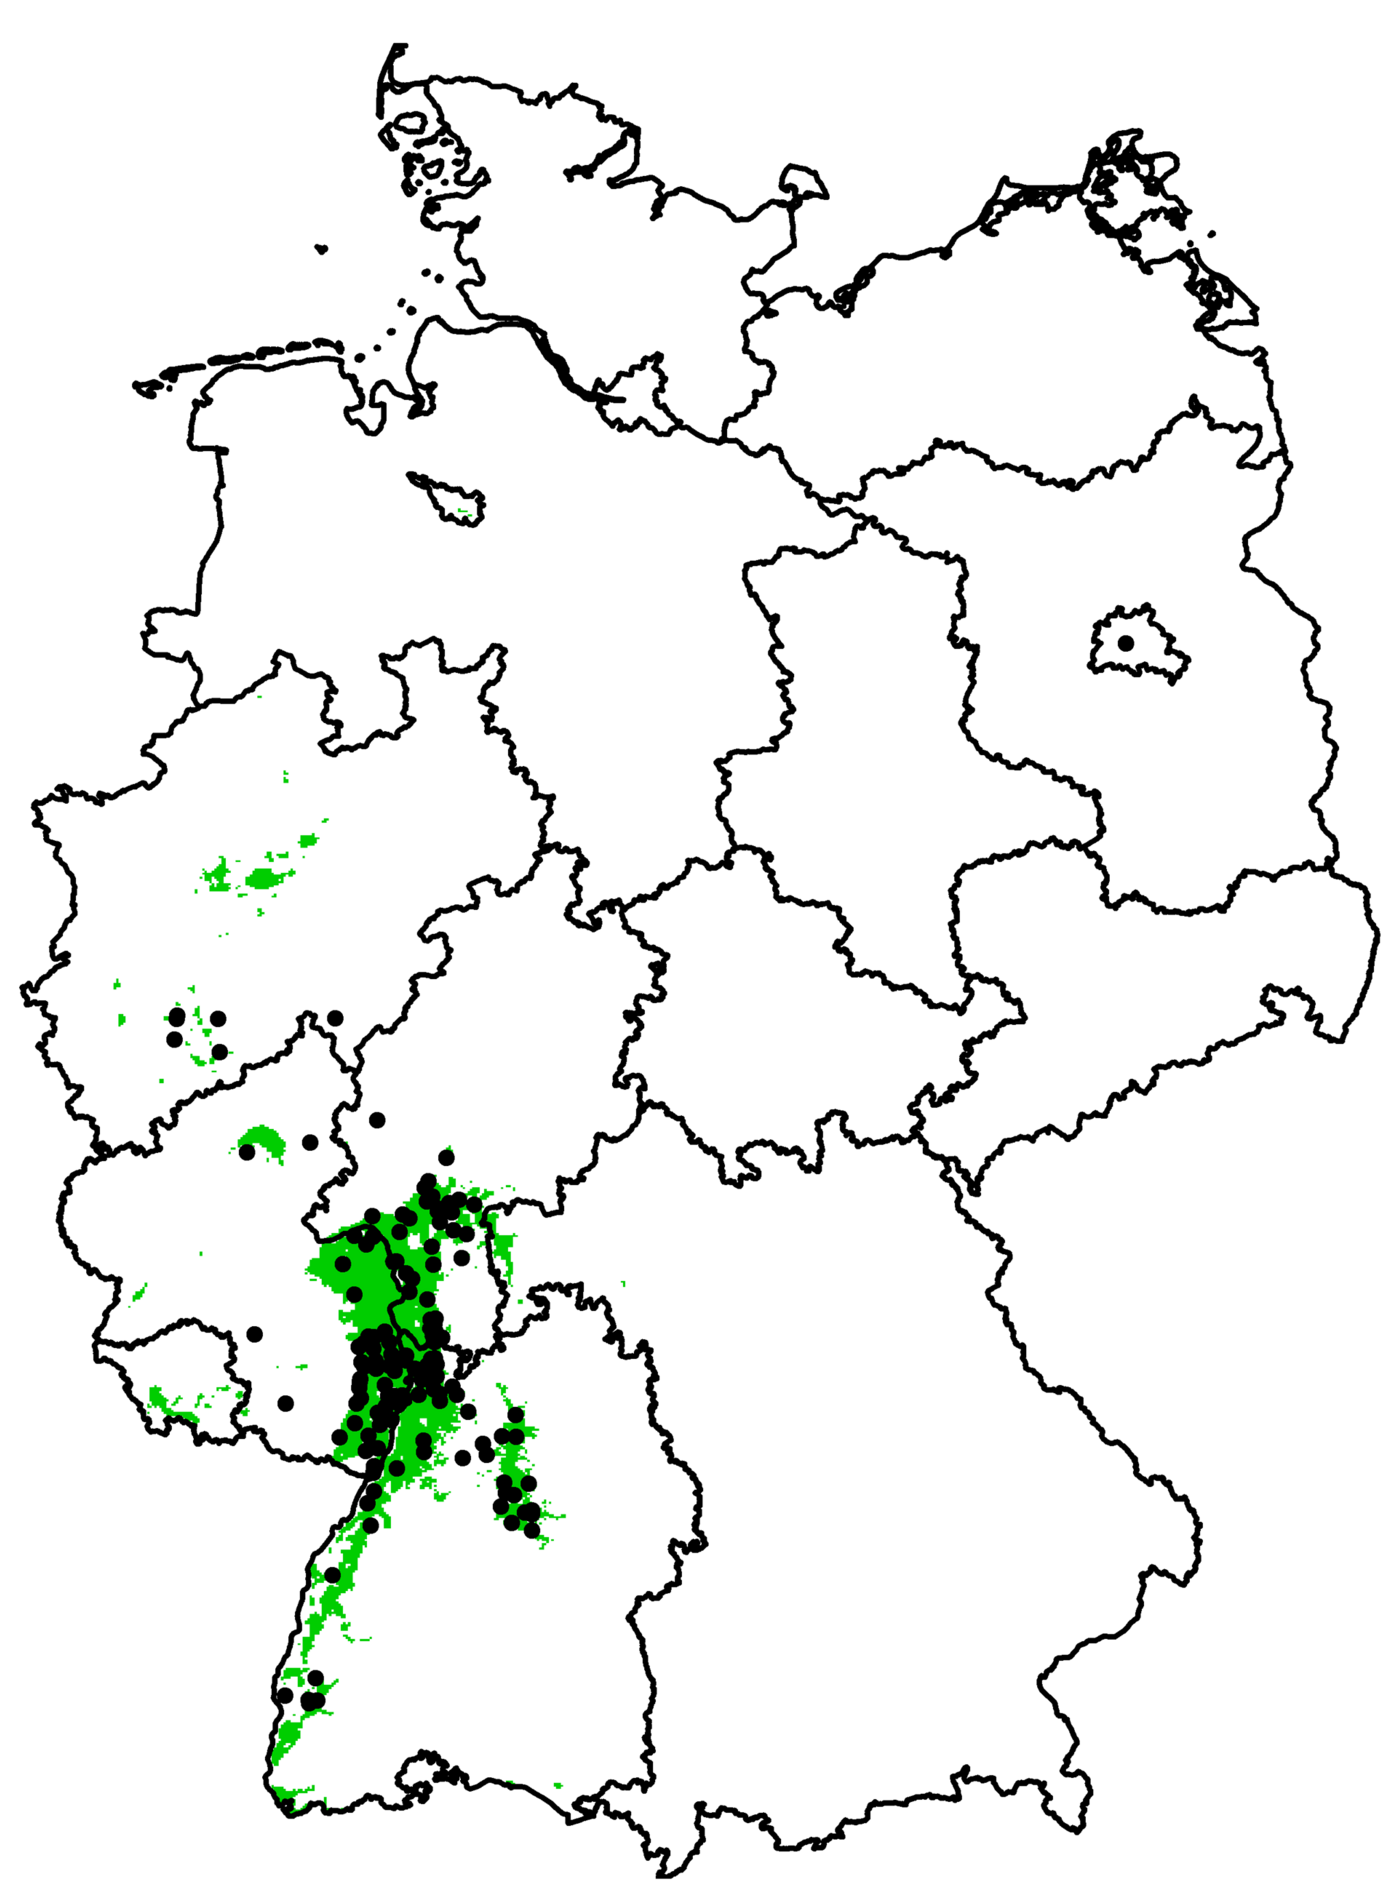 Das Bild zeigt die Usutu-Virus-Verbreitung auf einer Deutschlandkarte von 2011